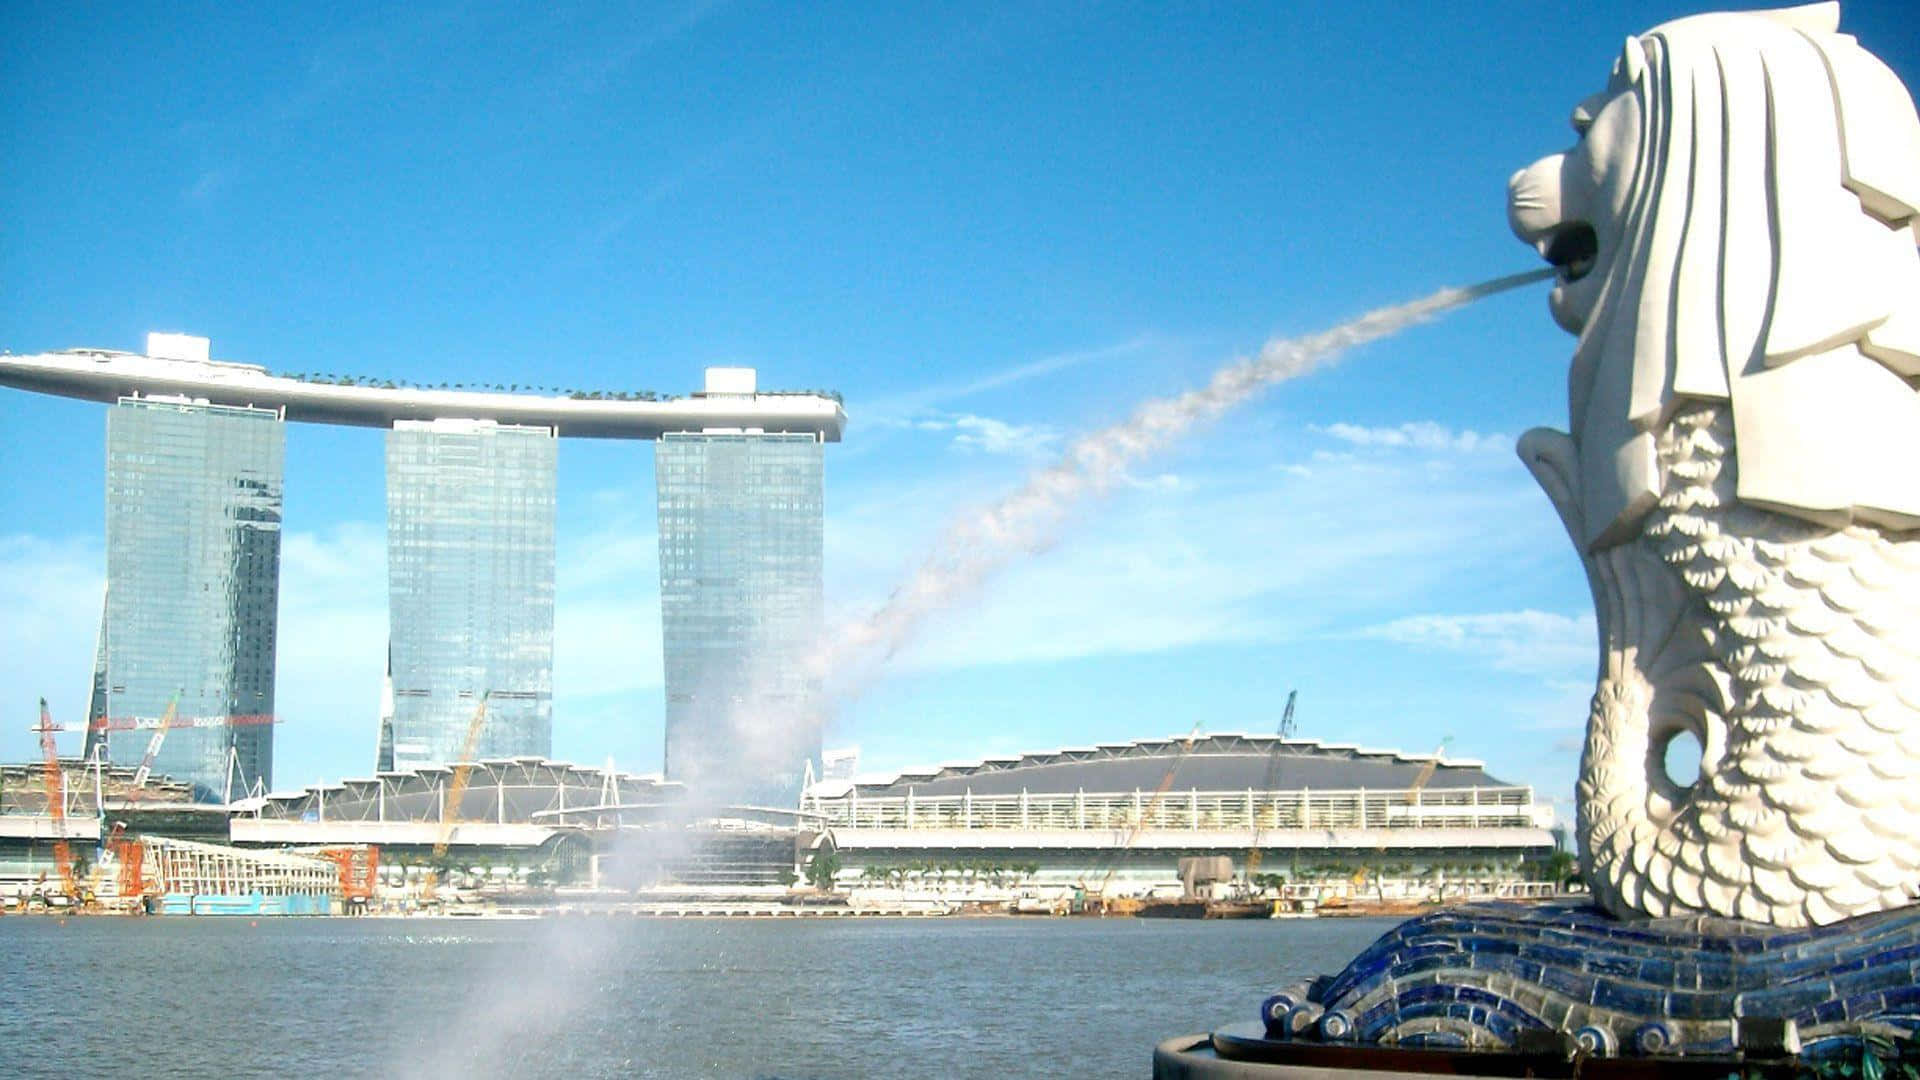 Enjoy the iconic skyline of Singapore